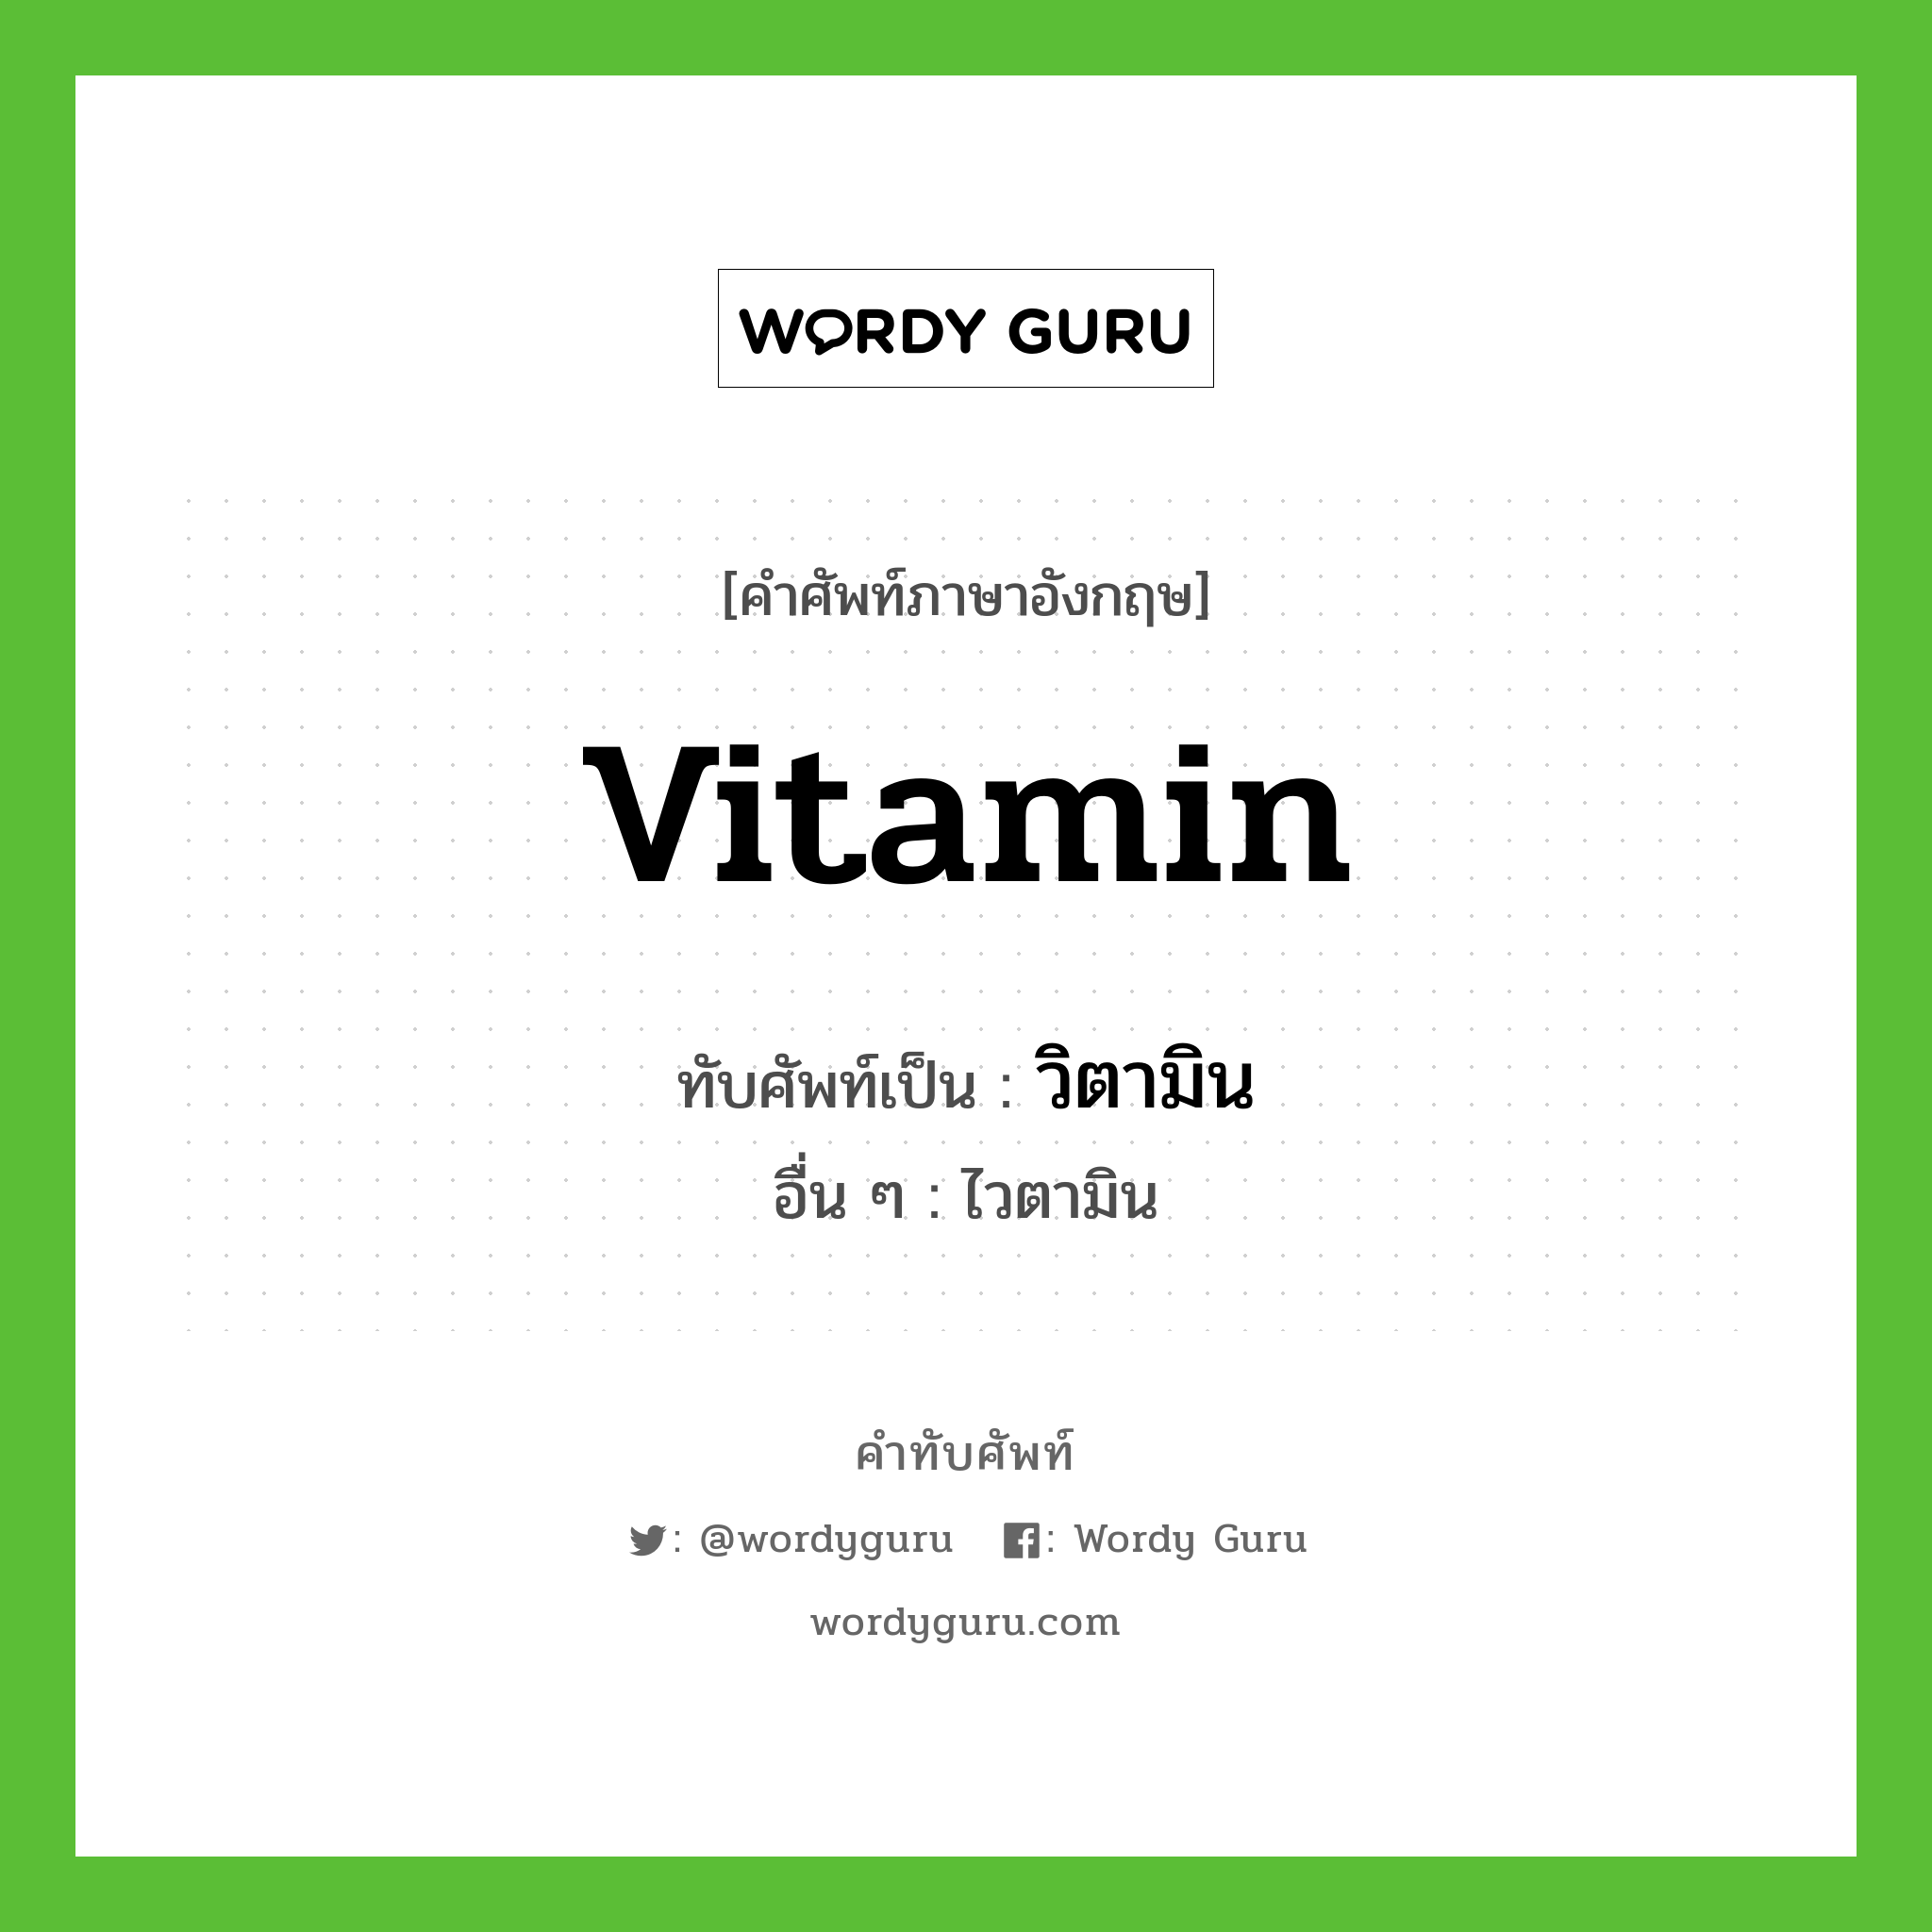 vitamin เขียนเป็นคำไทยว่าอะไร?, คำศัพท์ภาษาอังกฤษ vitamin ทับศัพท์เป็น วิตามิน อื่น ๆ ไวตามิน